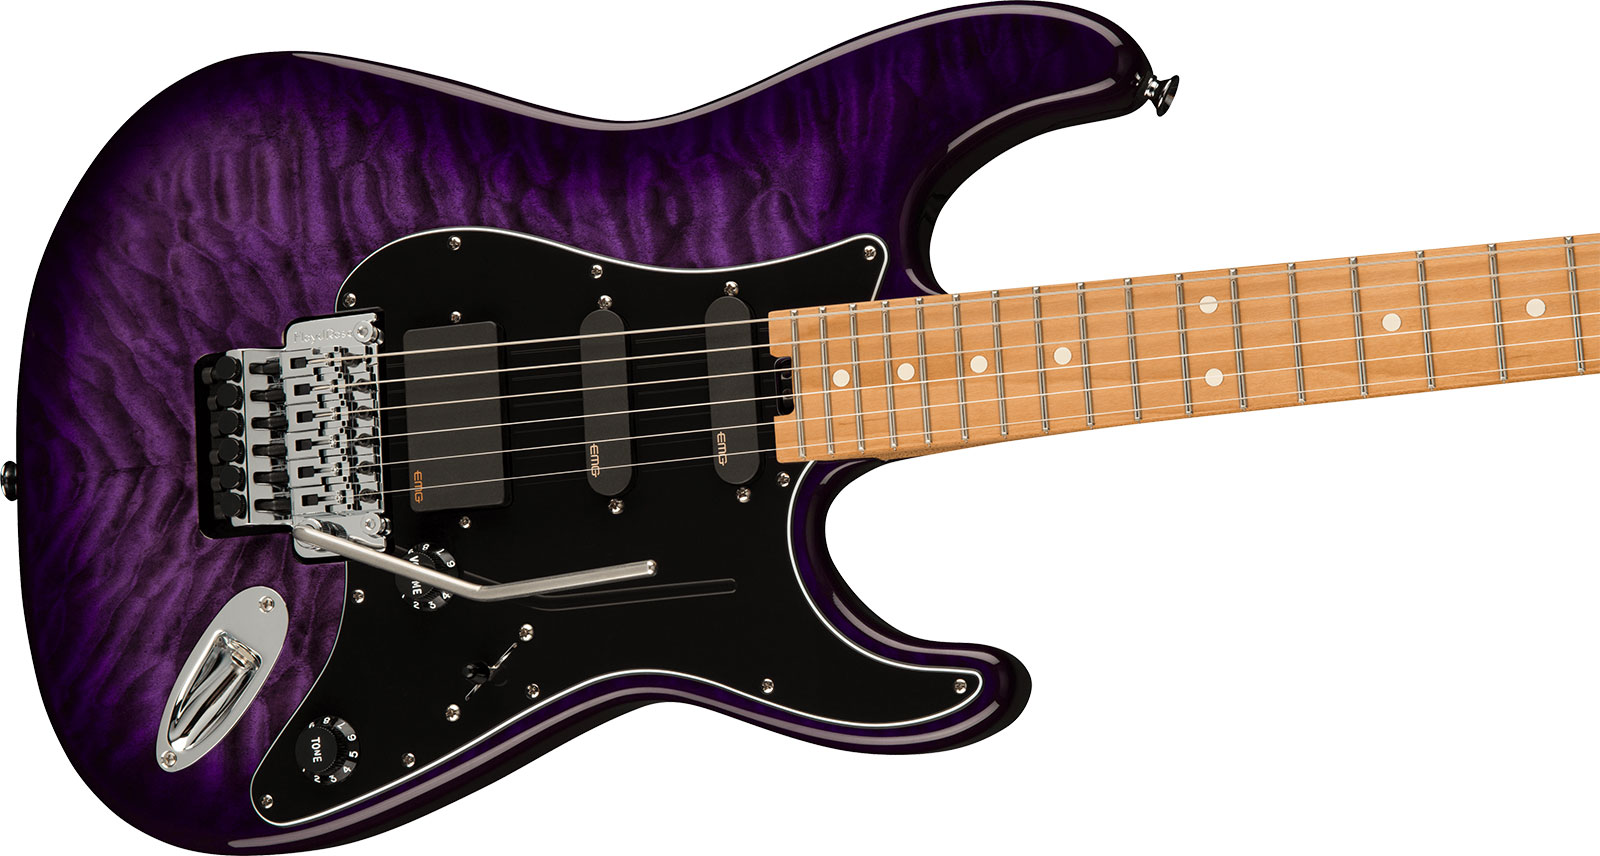 Charvel Marco Sfogli So Cal Style 1 Pro Mod Signature Hss Emg Fr Mn - Transparent Purple Burst - Guitare Électrique Signature - Variation 2